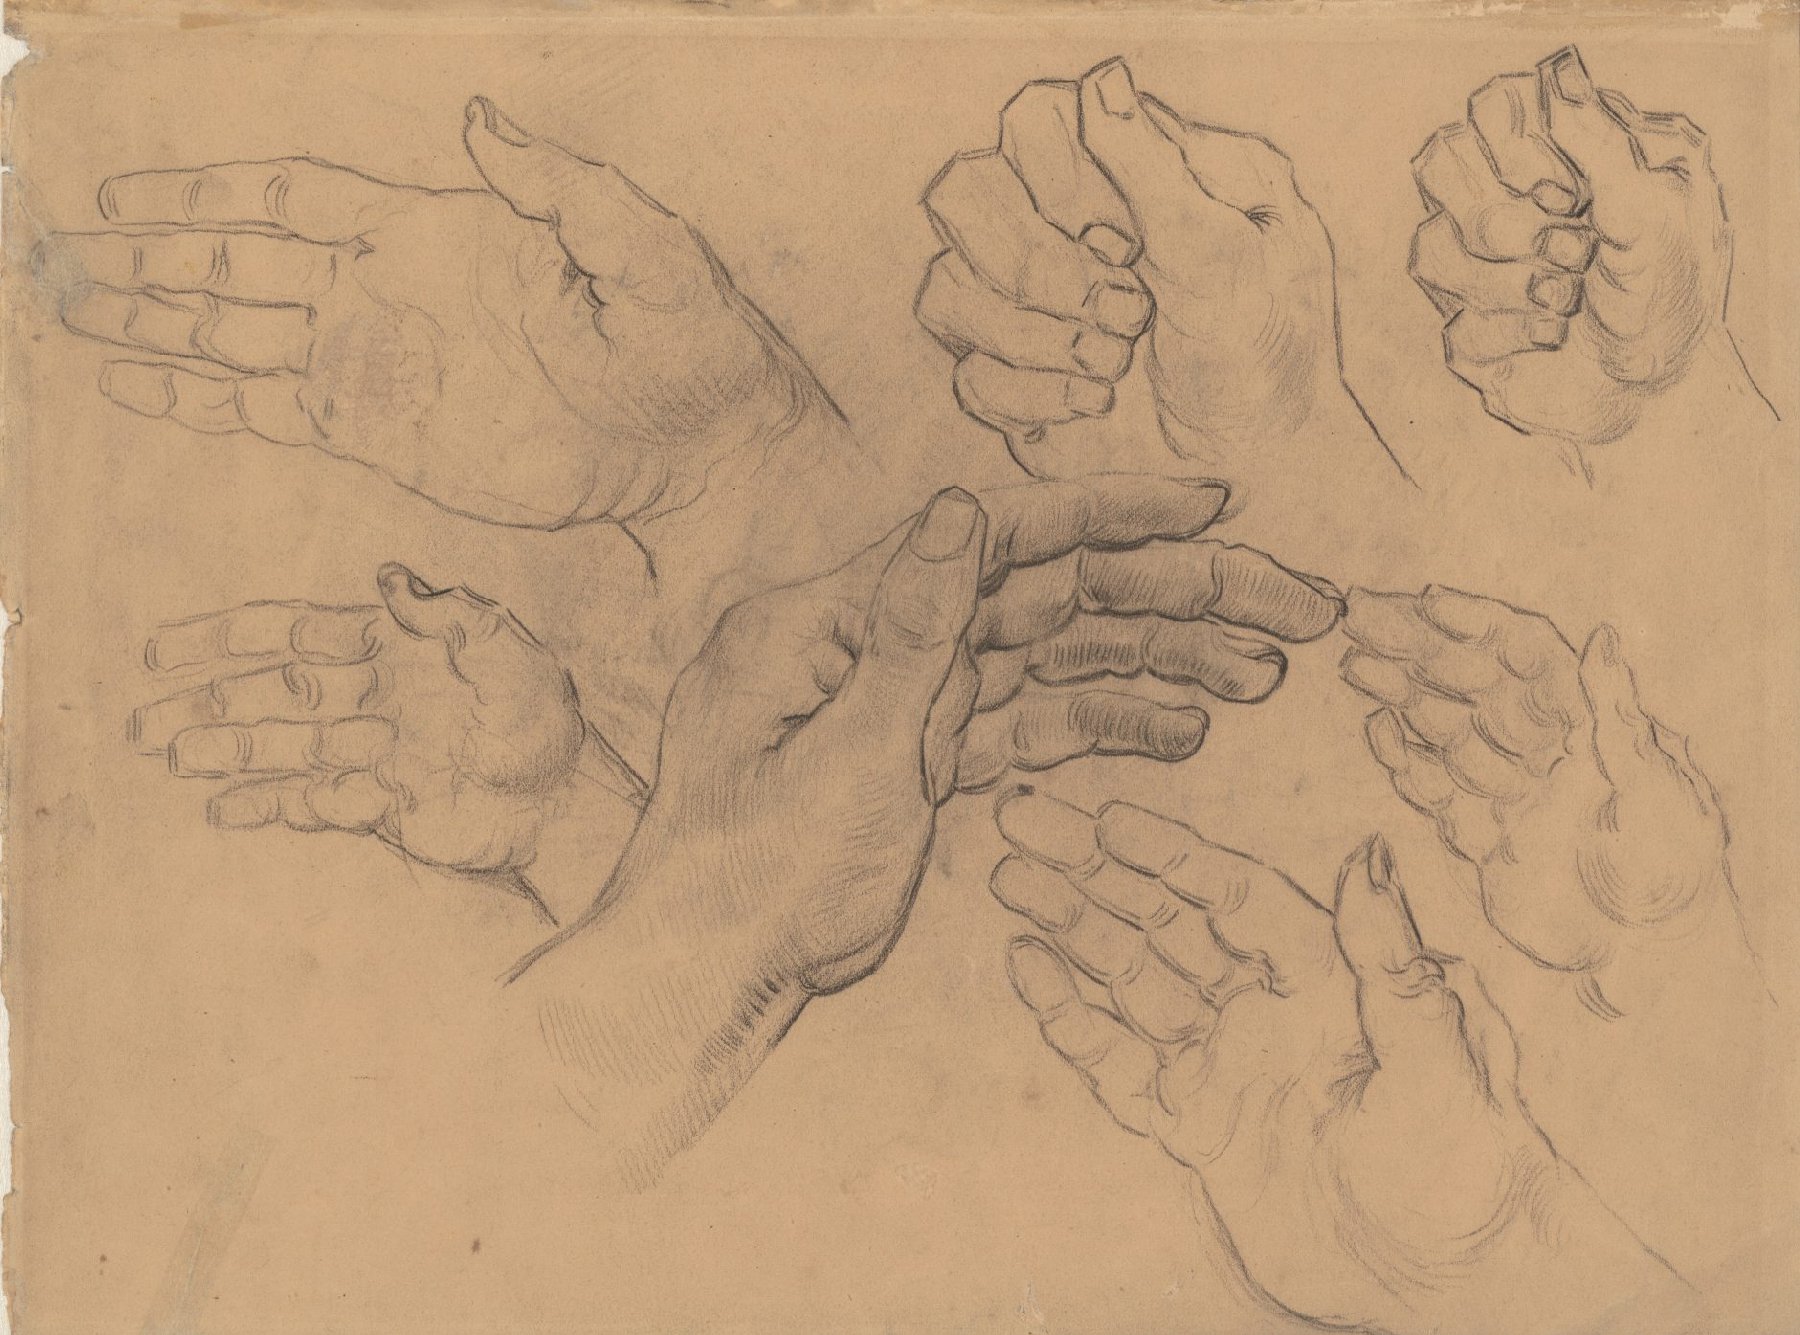 Studies van een hand Vincent van Gogh (1853 - 1890), Saint-Rémy-de-Provence, maart-april 1890